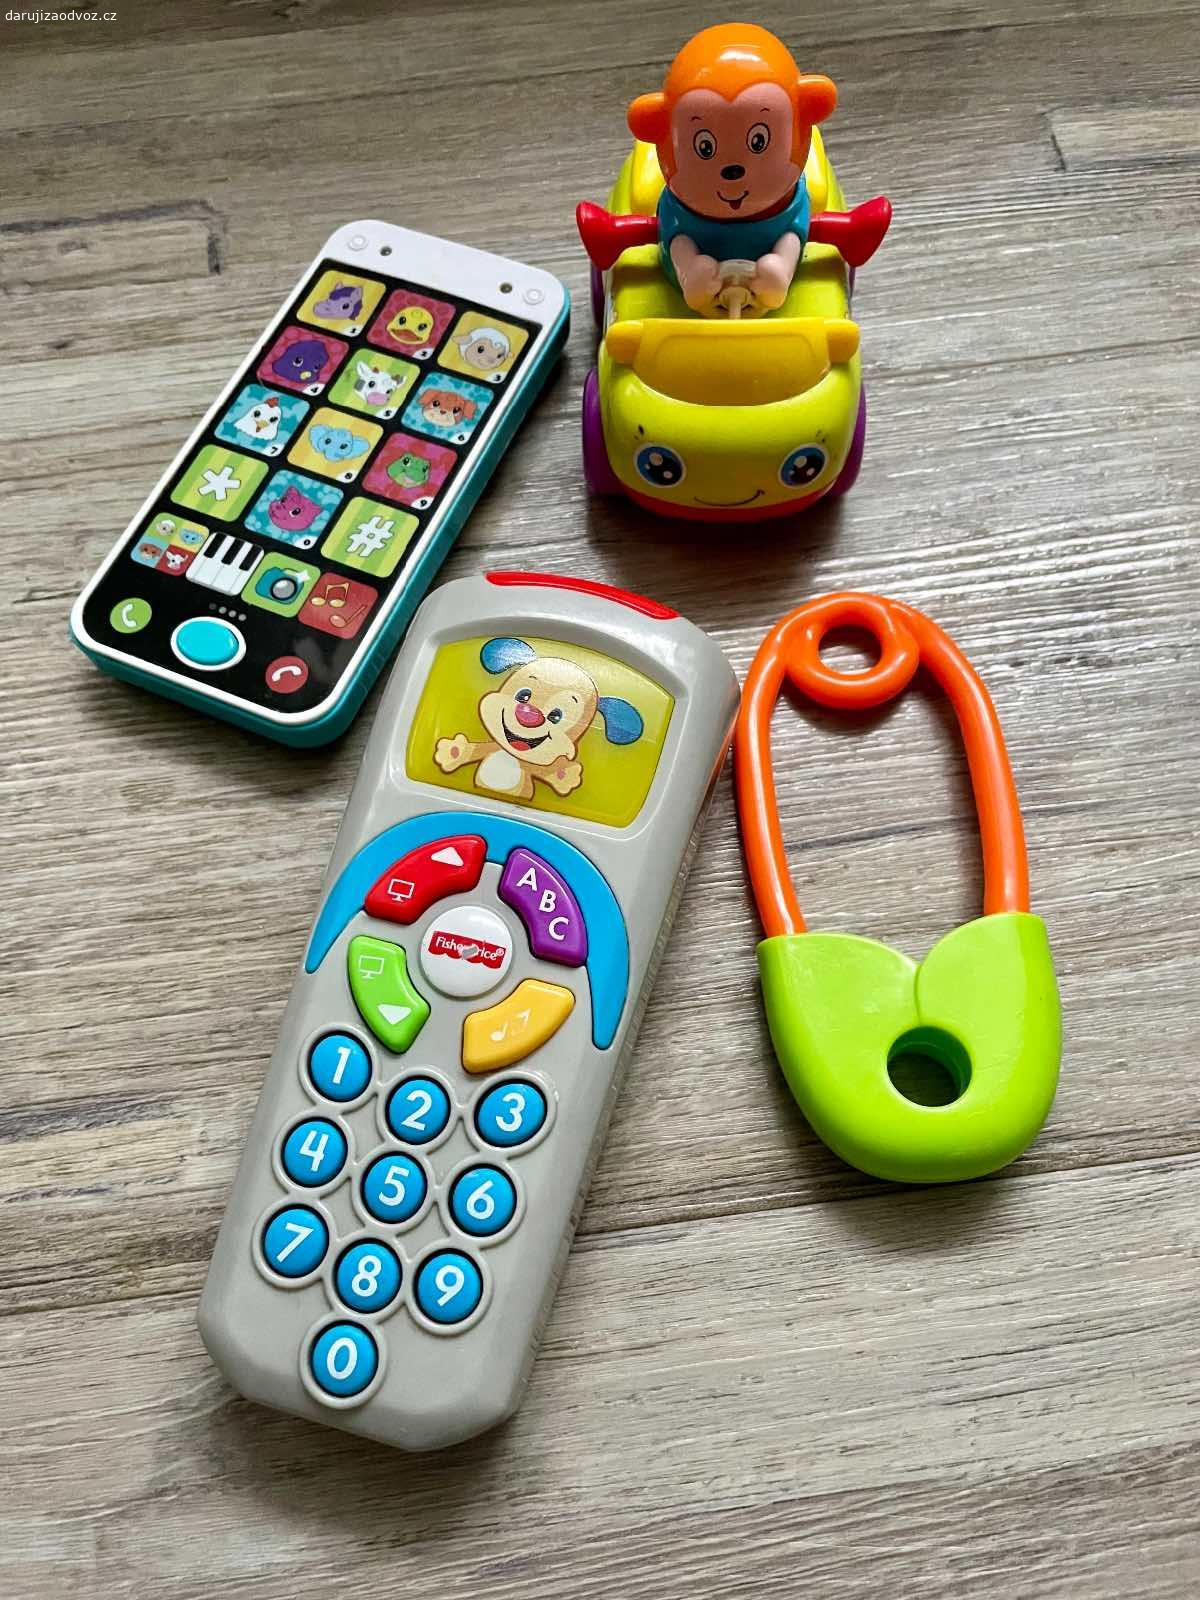 Hračky pro děti. Daruji hračky pro děti - u telefonu a dálkového ovladače nutno vyměnit baterky. Předání v Letňanech